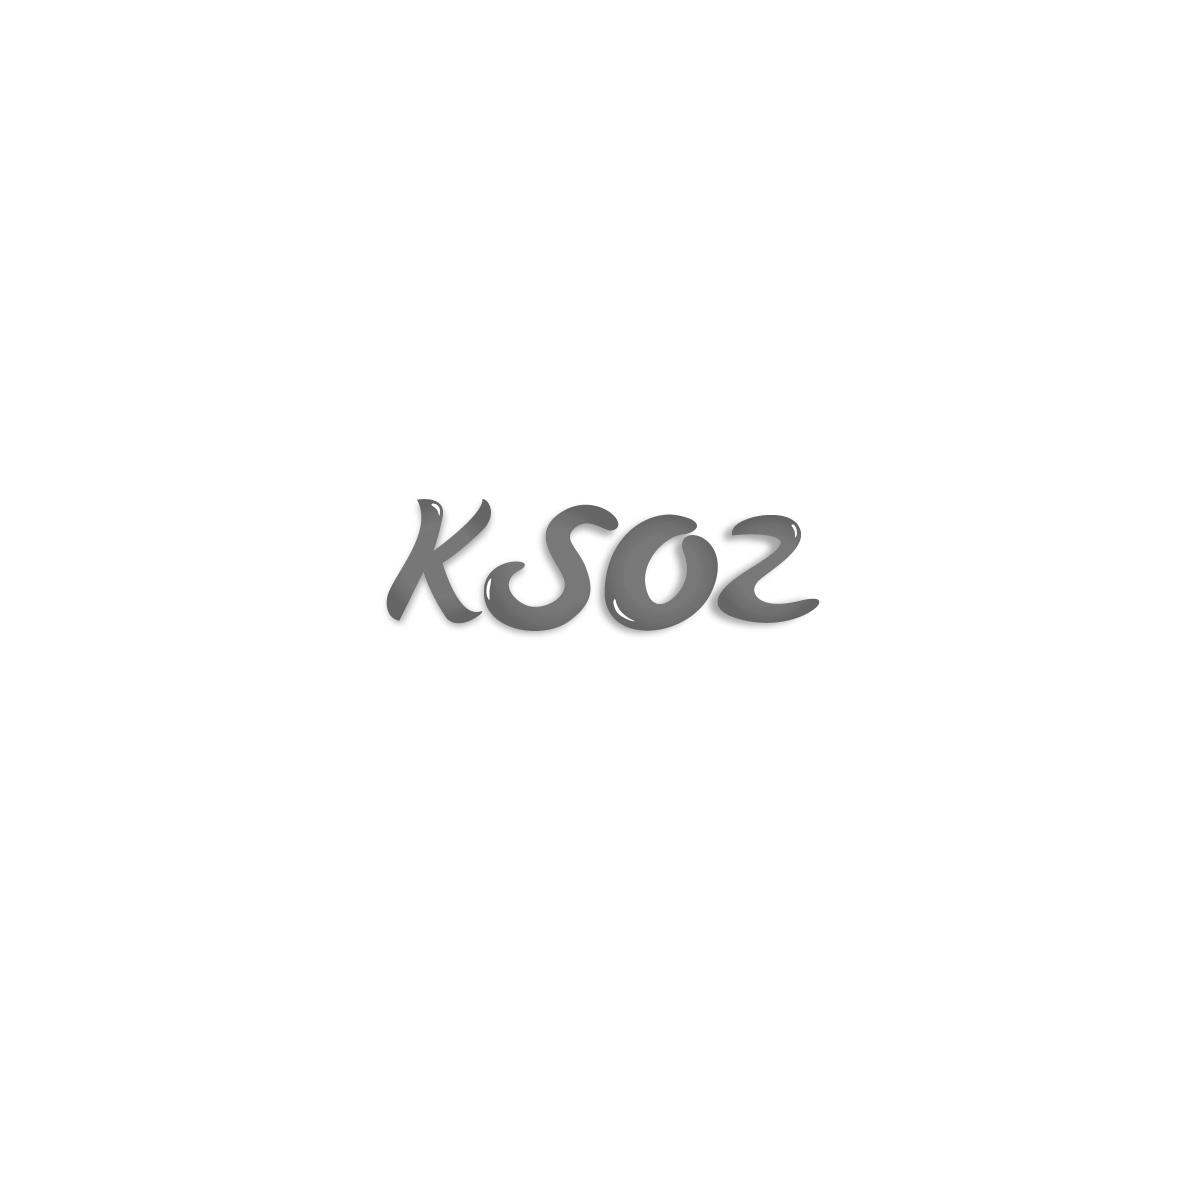 12类-运输装置KSOZ商标转让